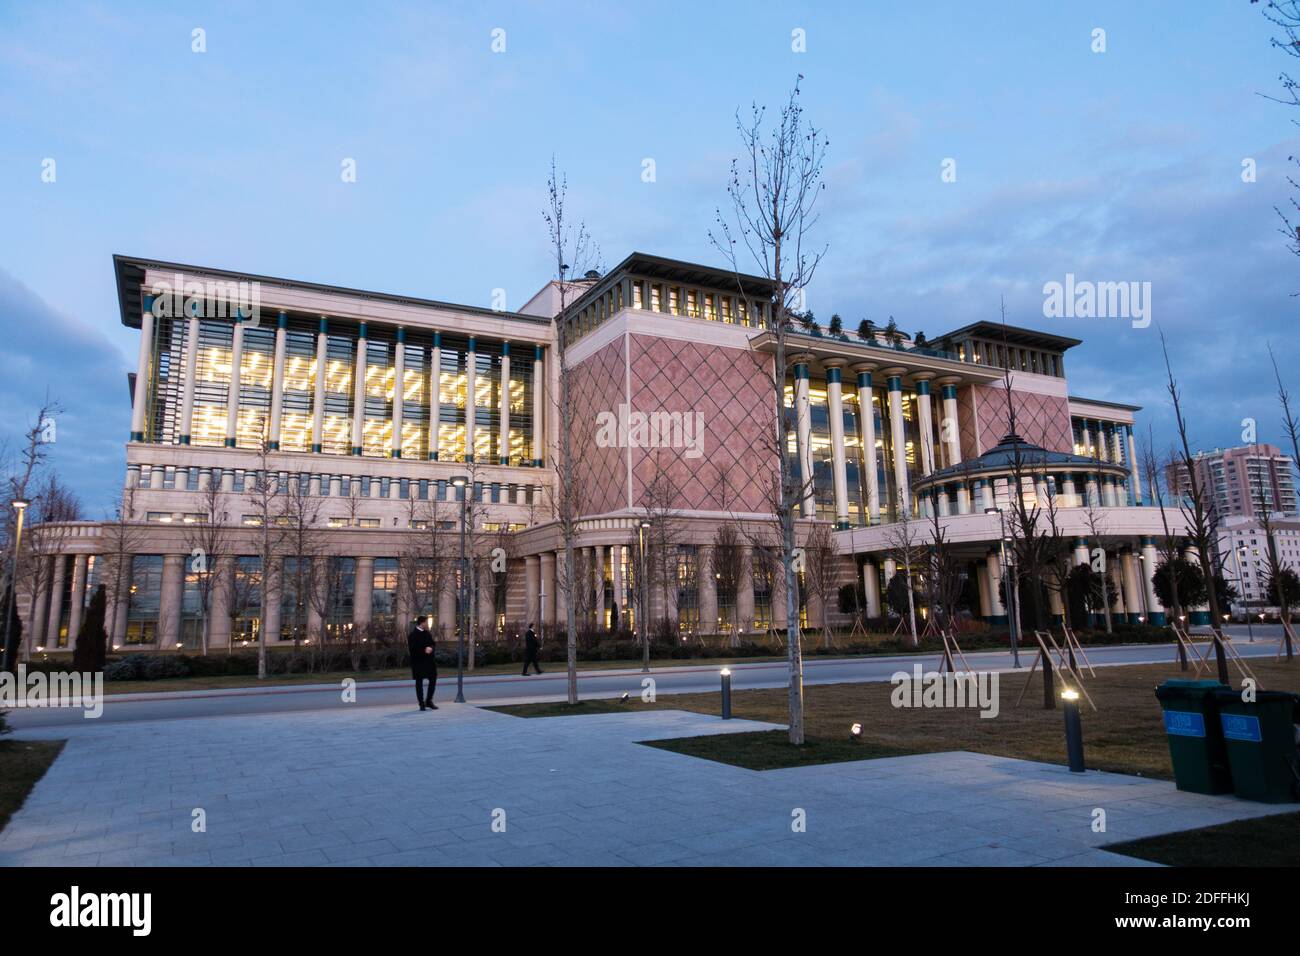 Vue extérieure d'une luxueuse bibliothèque conçue selon les traditions Architecture turque Banque D'Images